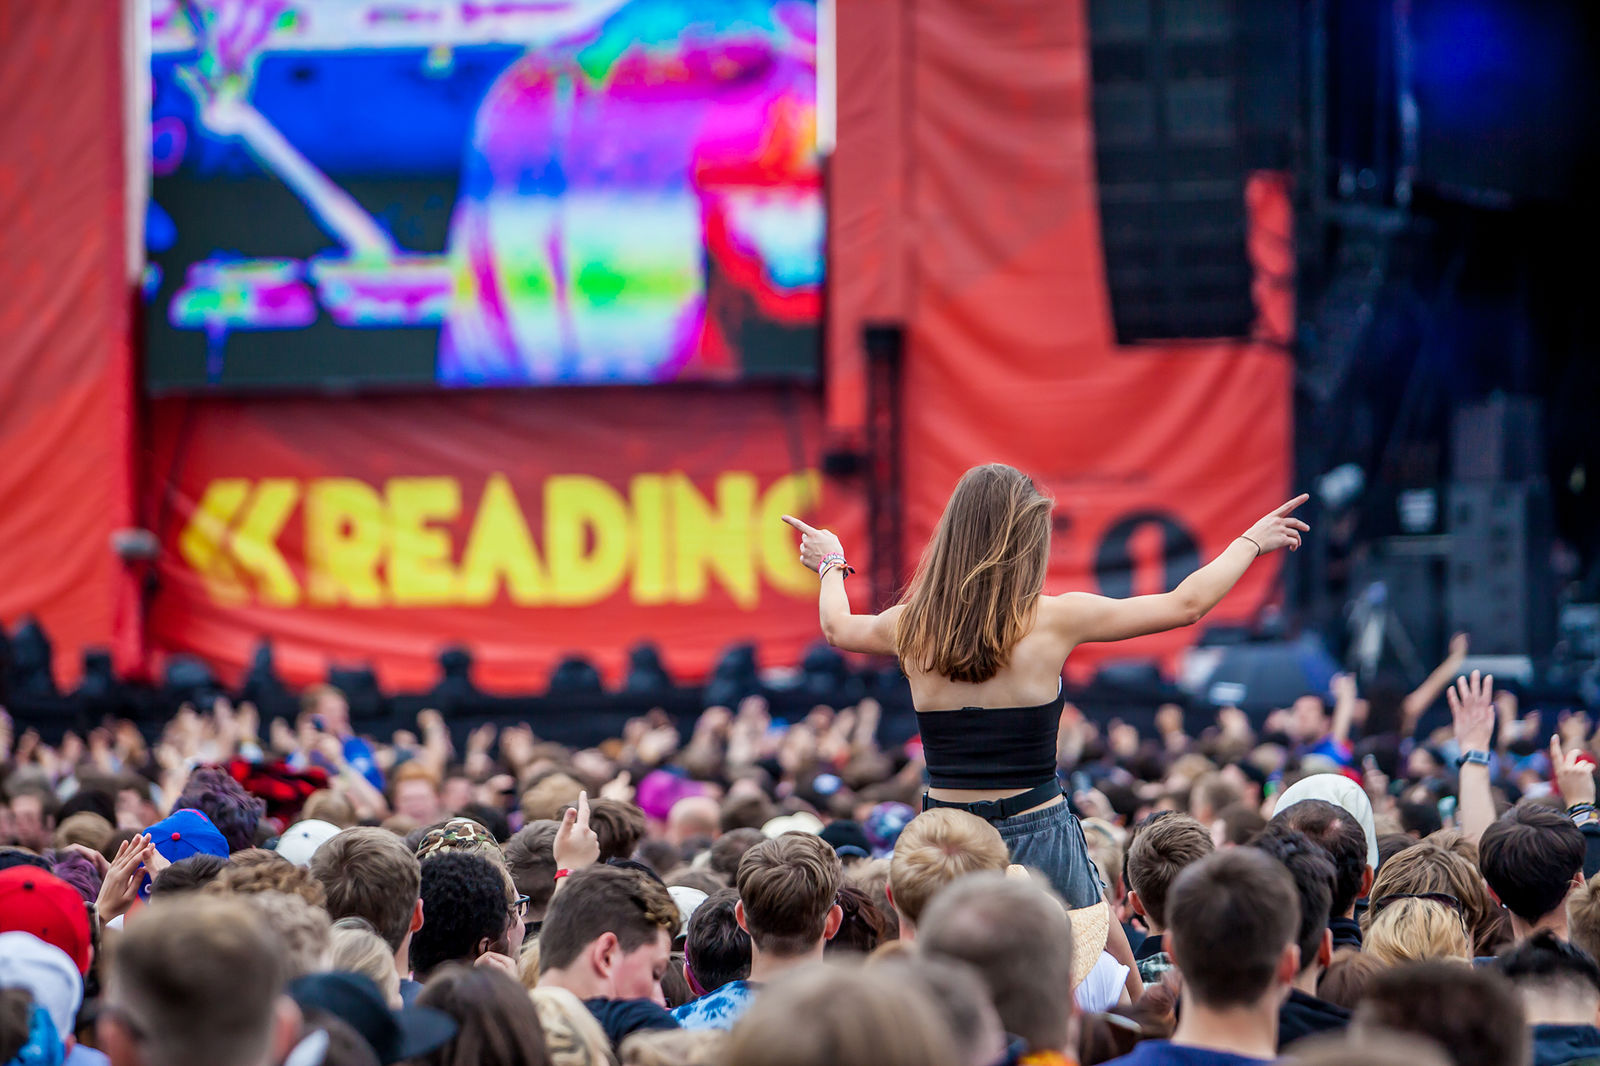 Reading Festival 2015